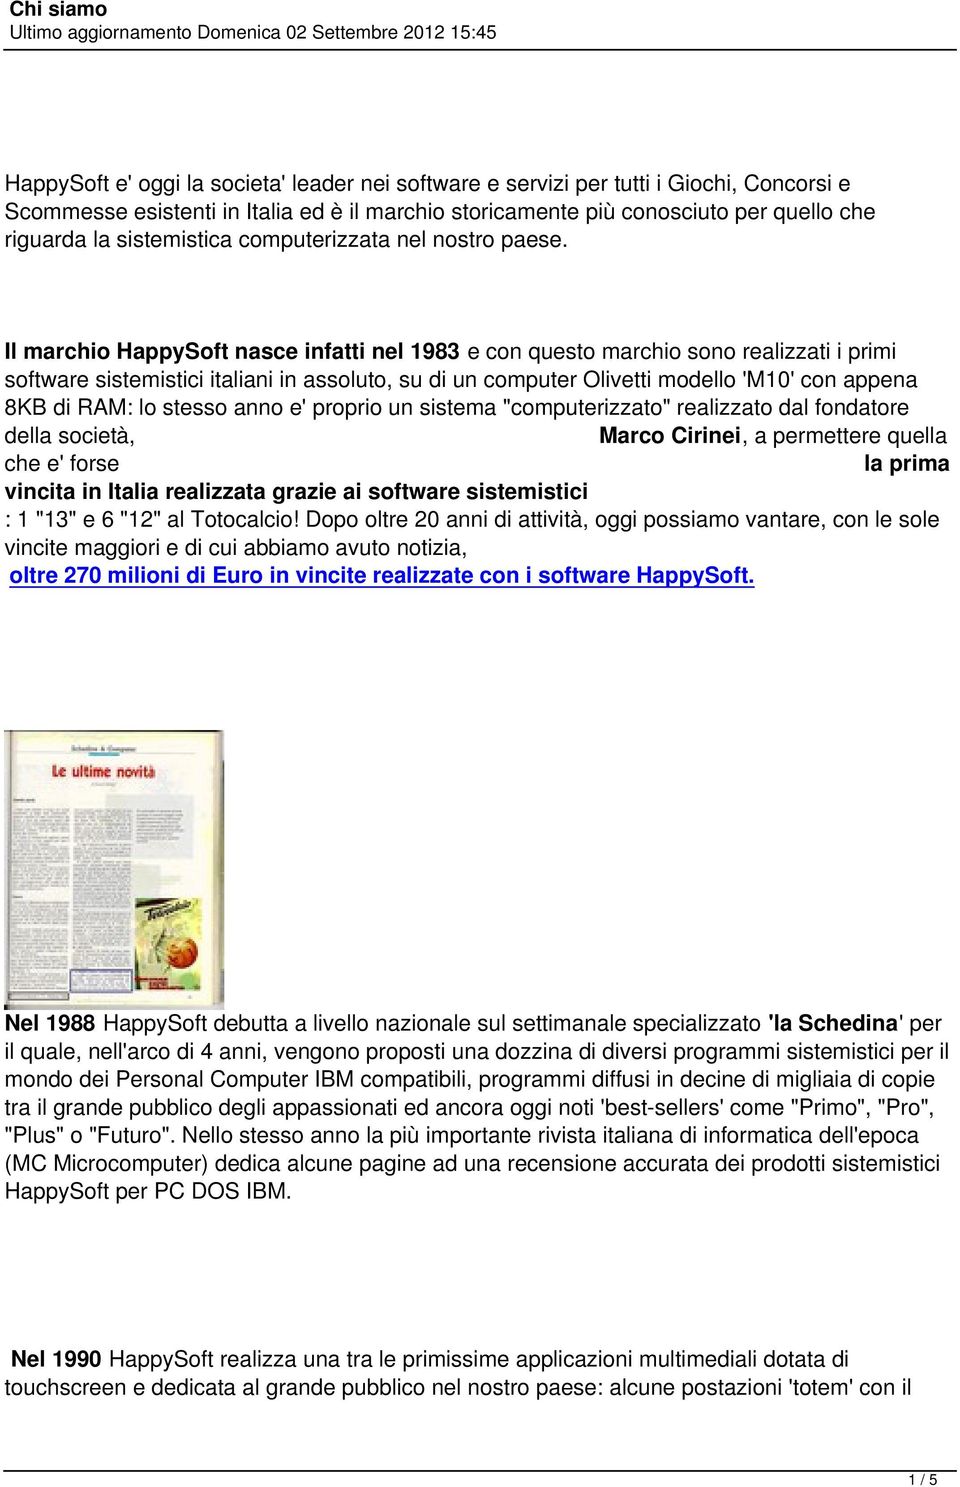 Il marchio HappySoft nasce infatti nel 1983 e con questo marchio sono realizzati i primi software sistemistici italiani in assoluto, su di un computer Olivetti modello 'M10' con appena 8KB di RAM: lo